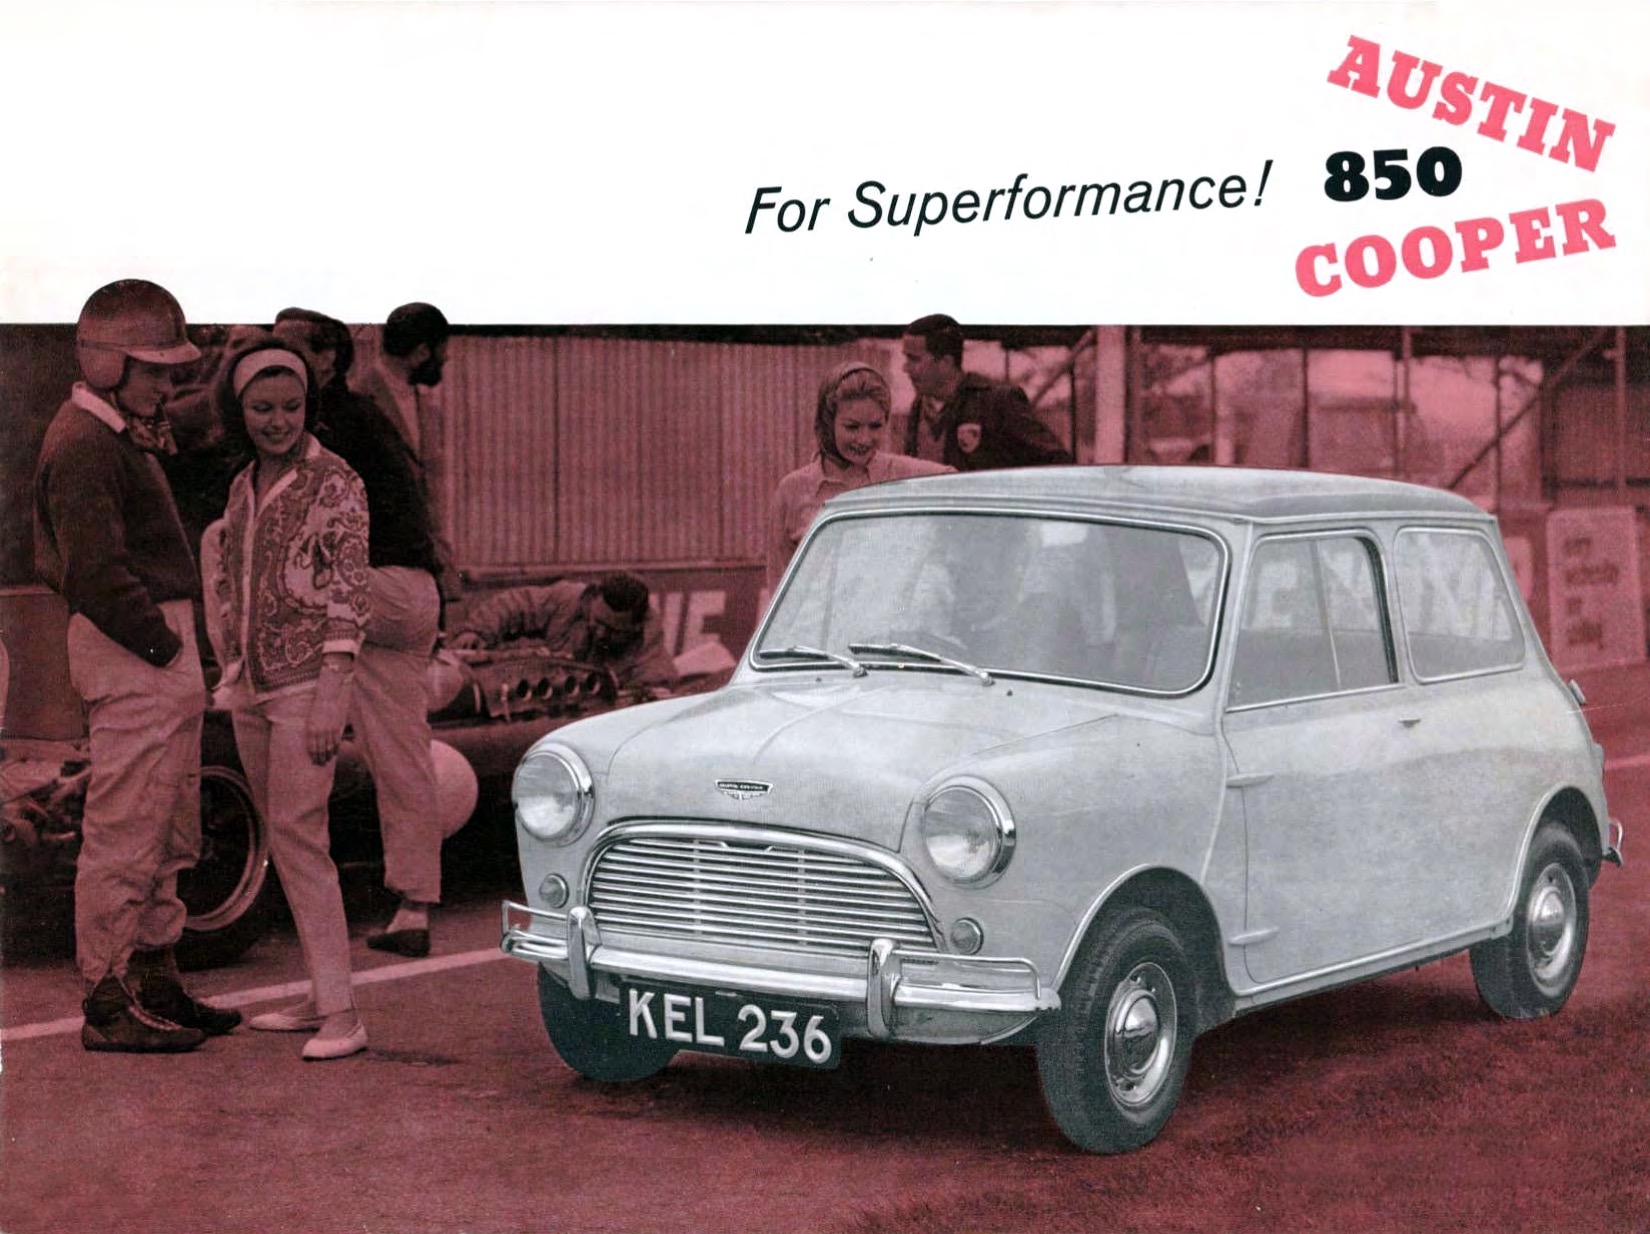 1962 Austin Cooper 850